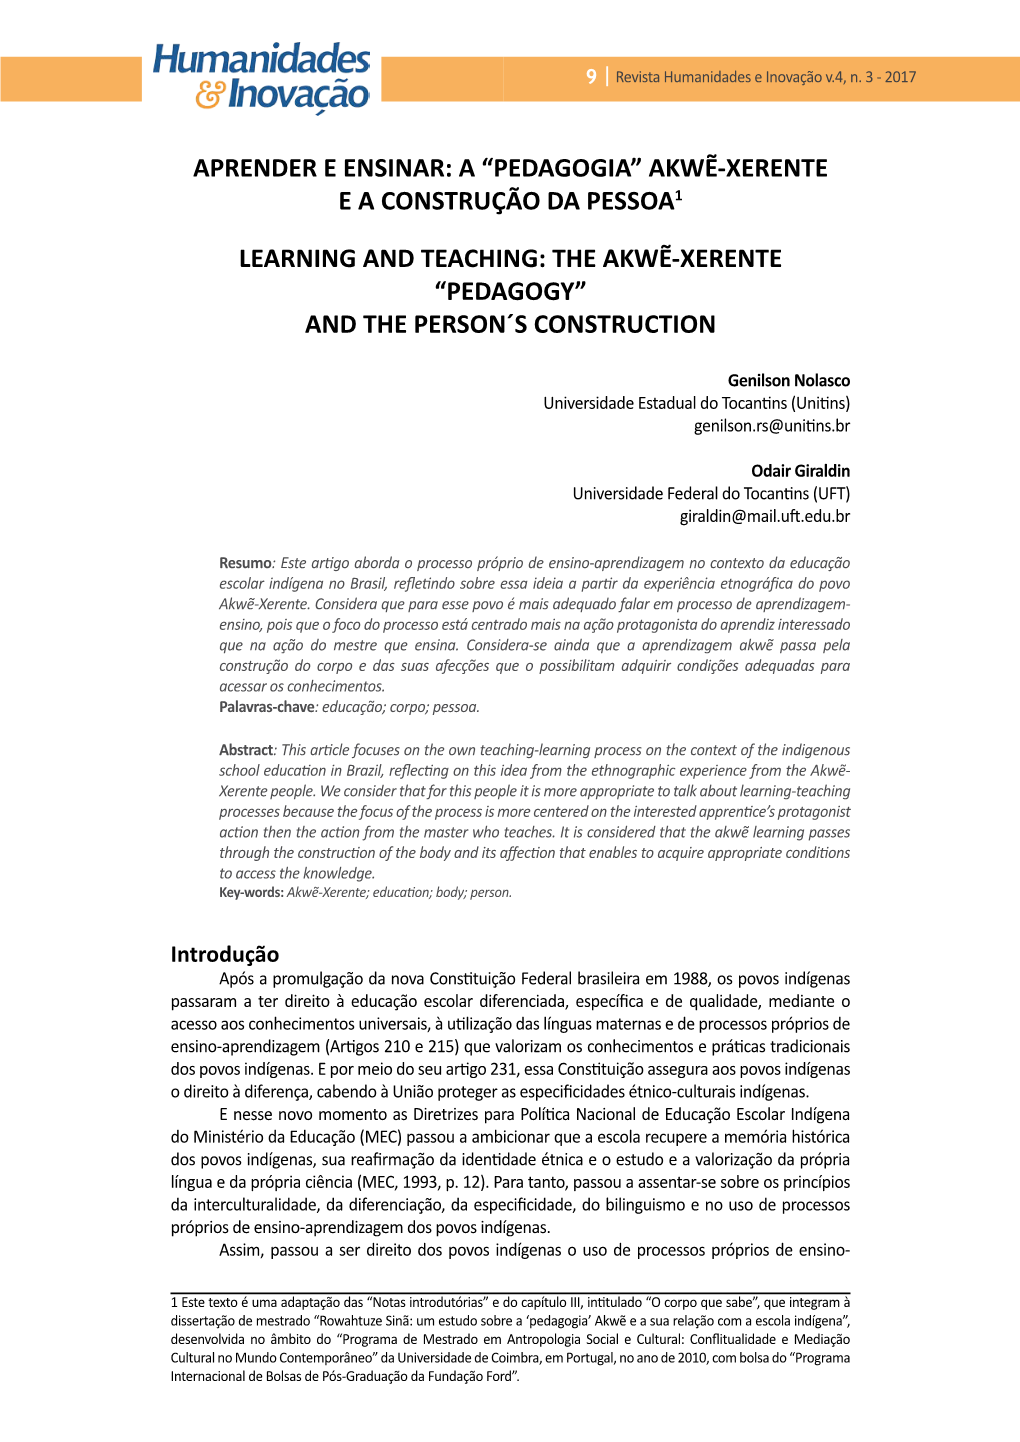 Aprender E Ensinar: a “Pedagogia” Akwẽ-Xerente E a Construção Da Pessoa1